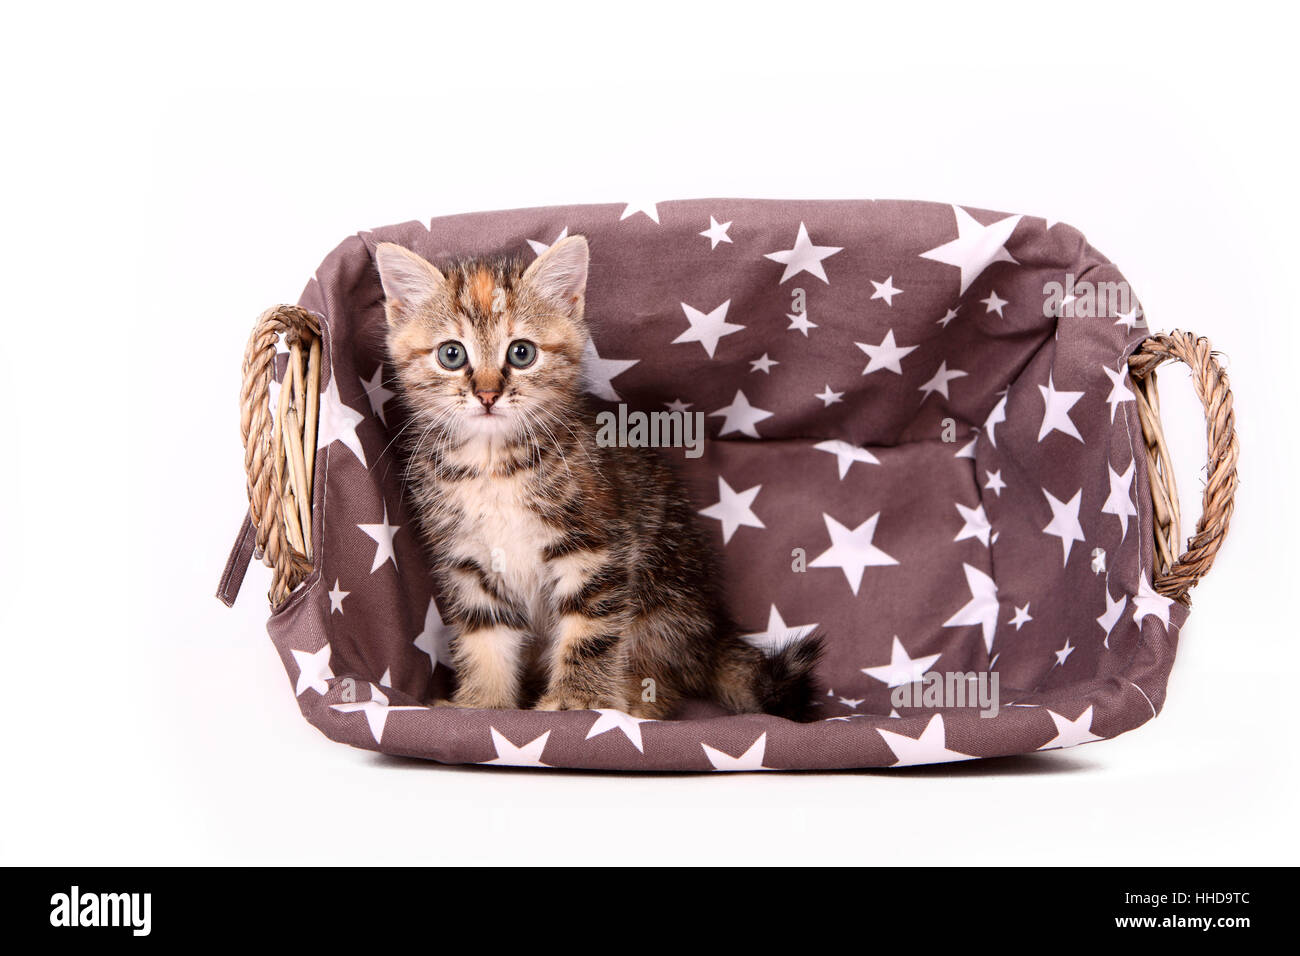 Europaeisch Kurzhaar. Kitten (6 weeks old) sitting in a wicker basket. Studio picture against a white background Stock Photo